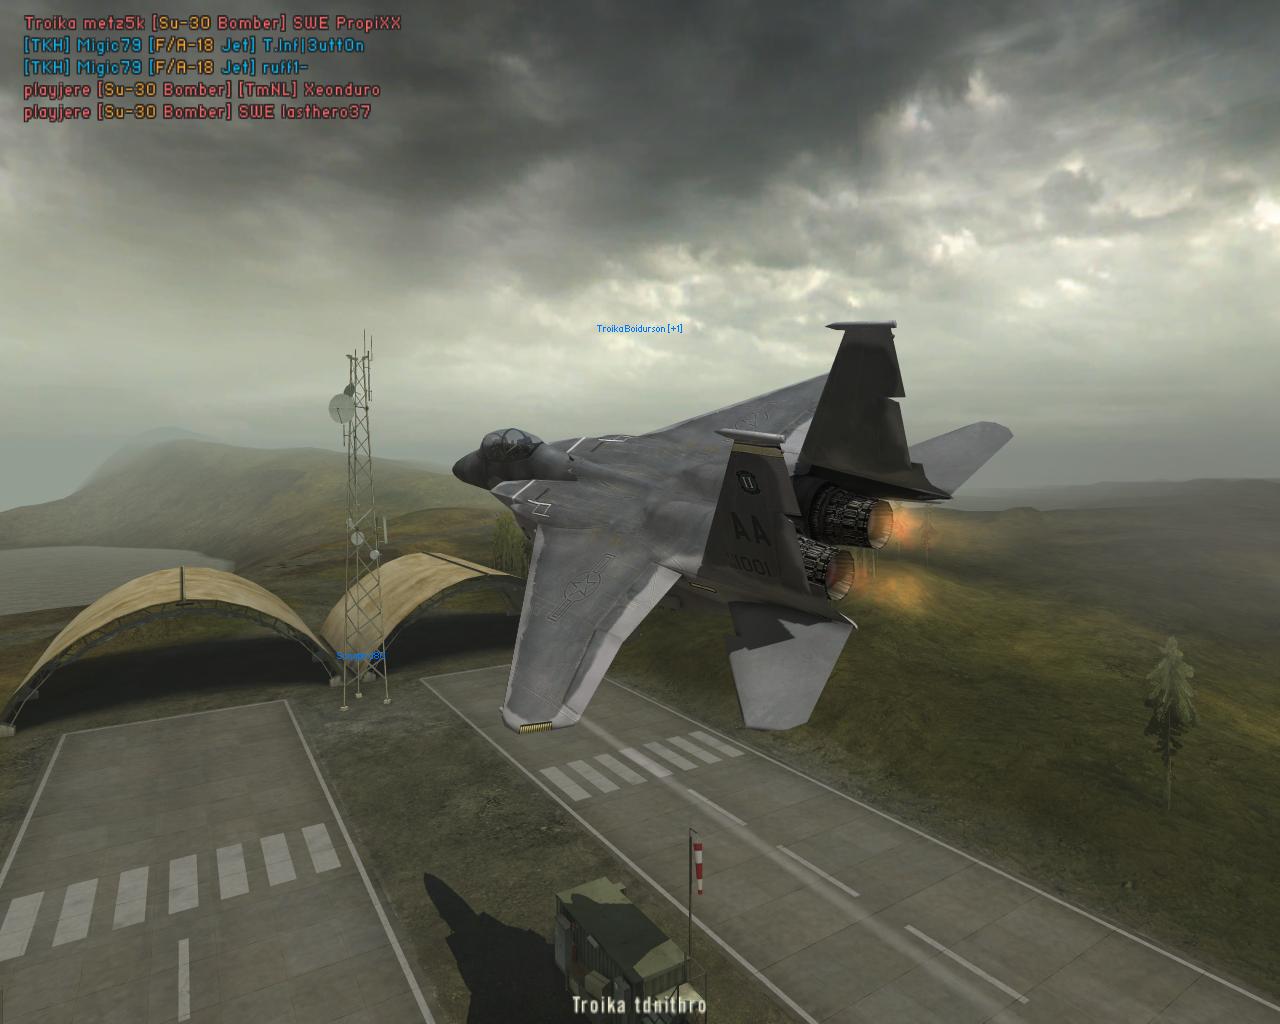 F15 Eagle